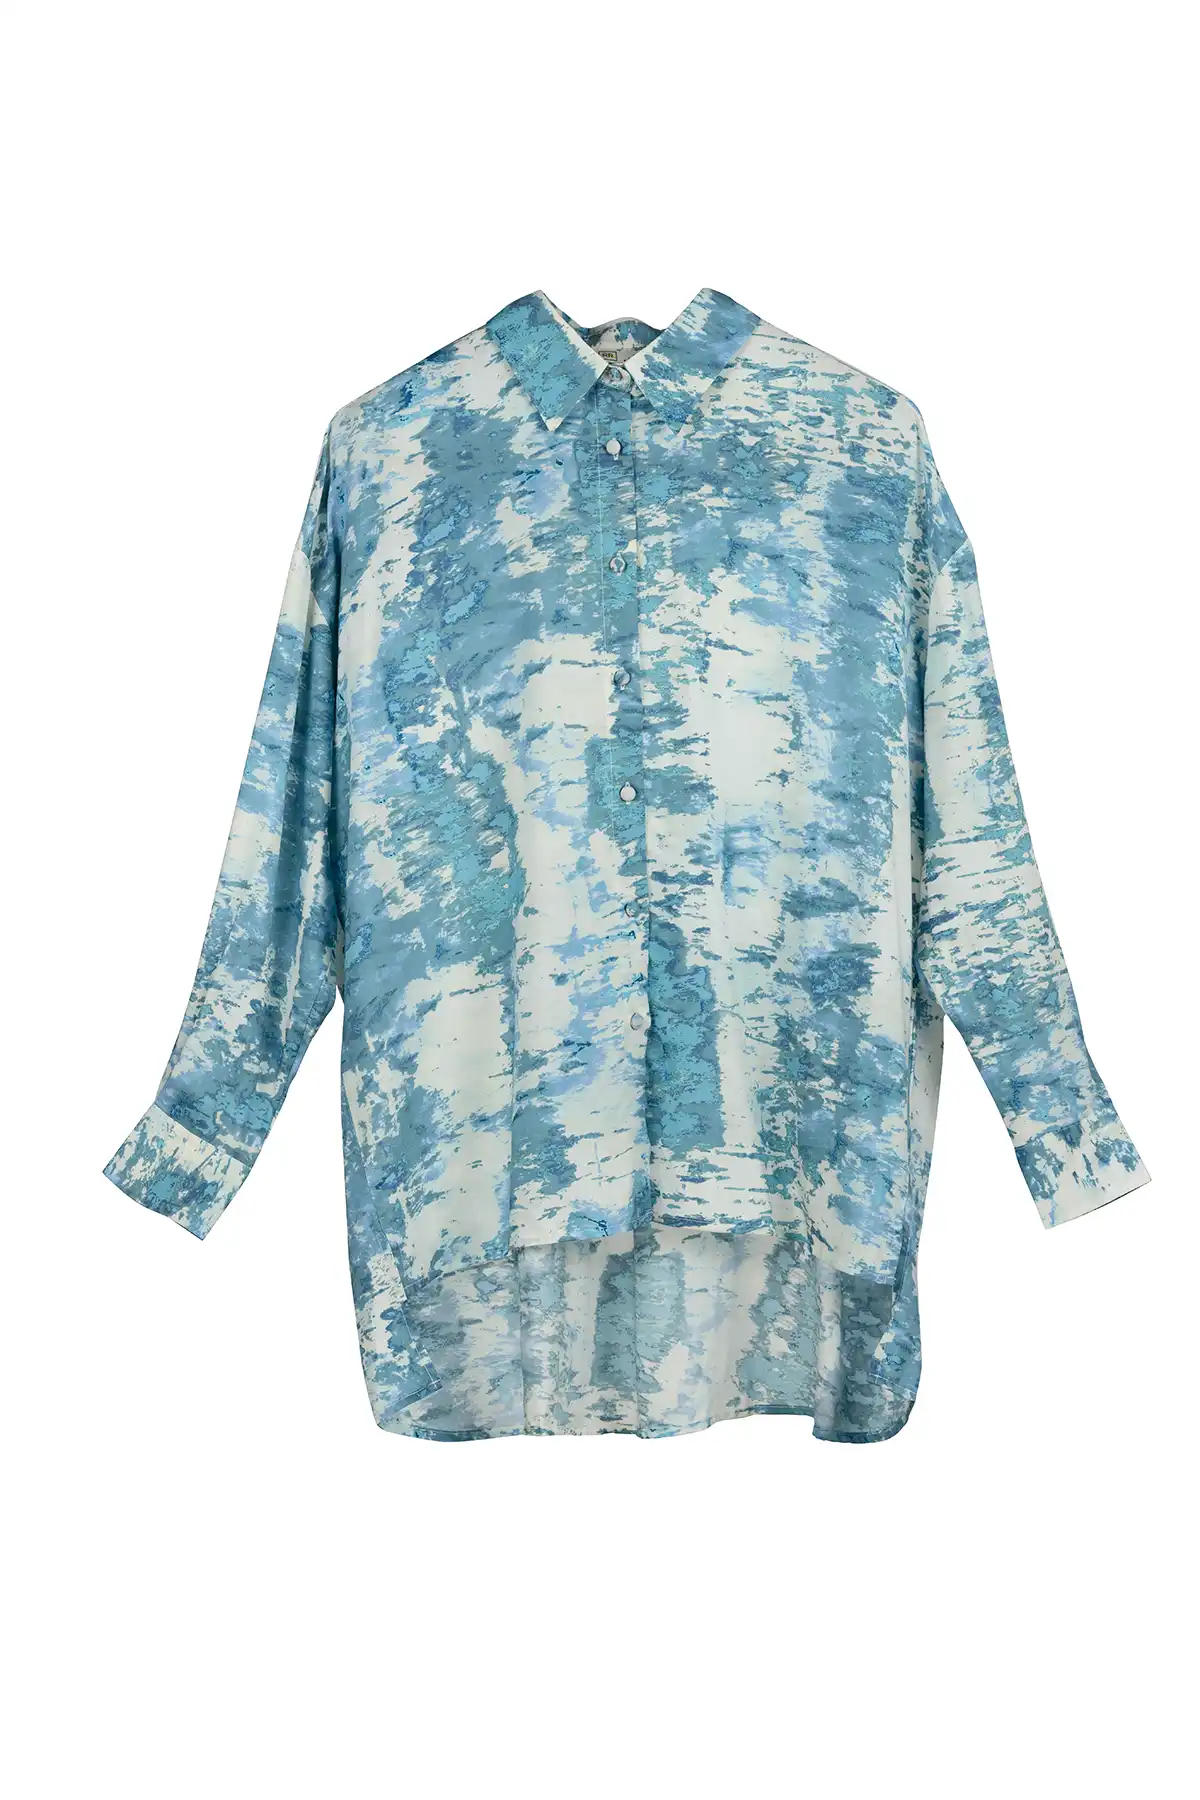 Tie Dye print Shirt - White & Carolina Blue (AOP)